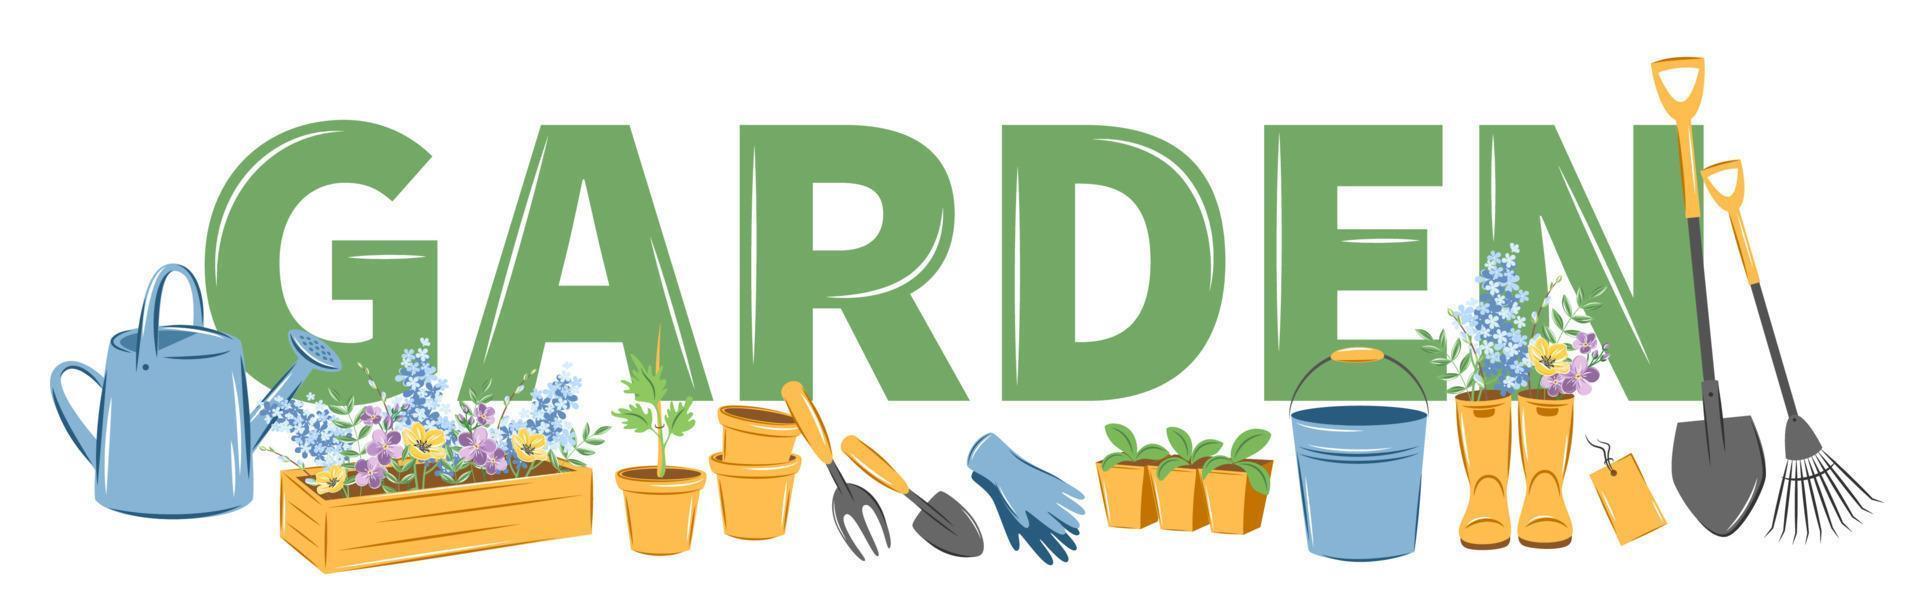 pancarta de jardín con letras tipográficas. juego de herramientas de jardín de primavera. ilustración vectorial vector